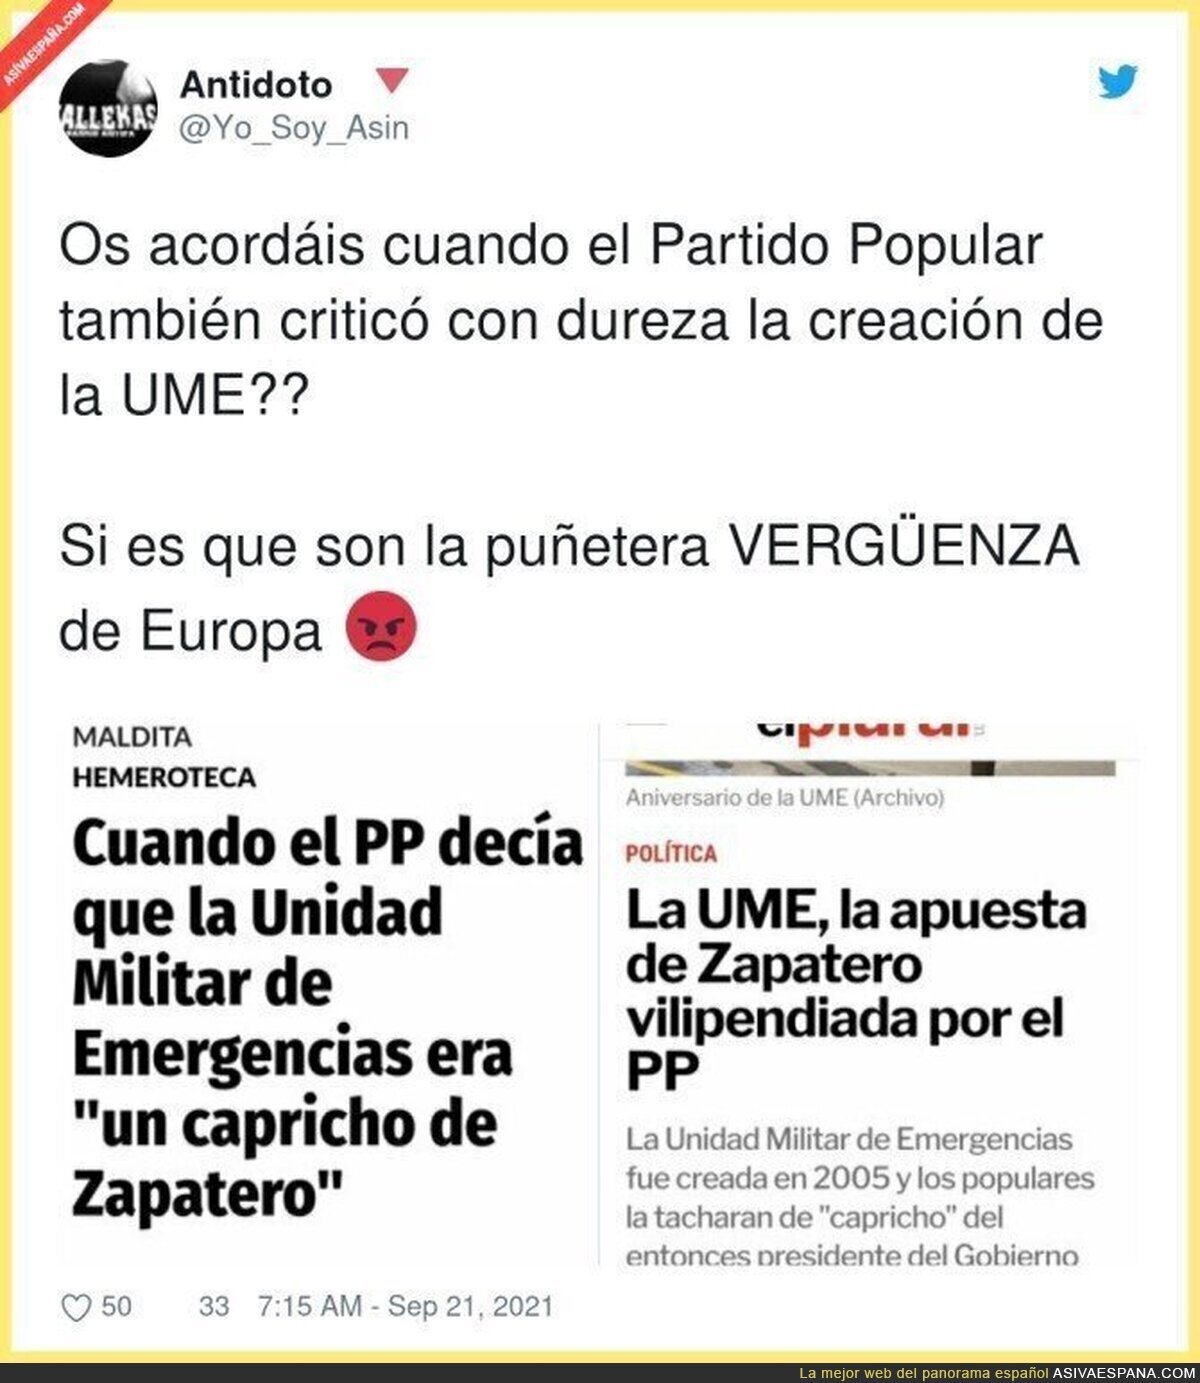 La UME ha sido de lo mejor que ha hecho Zapatero por España